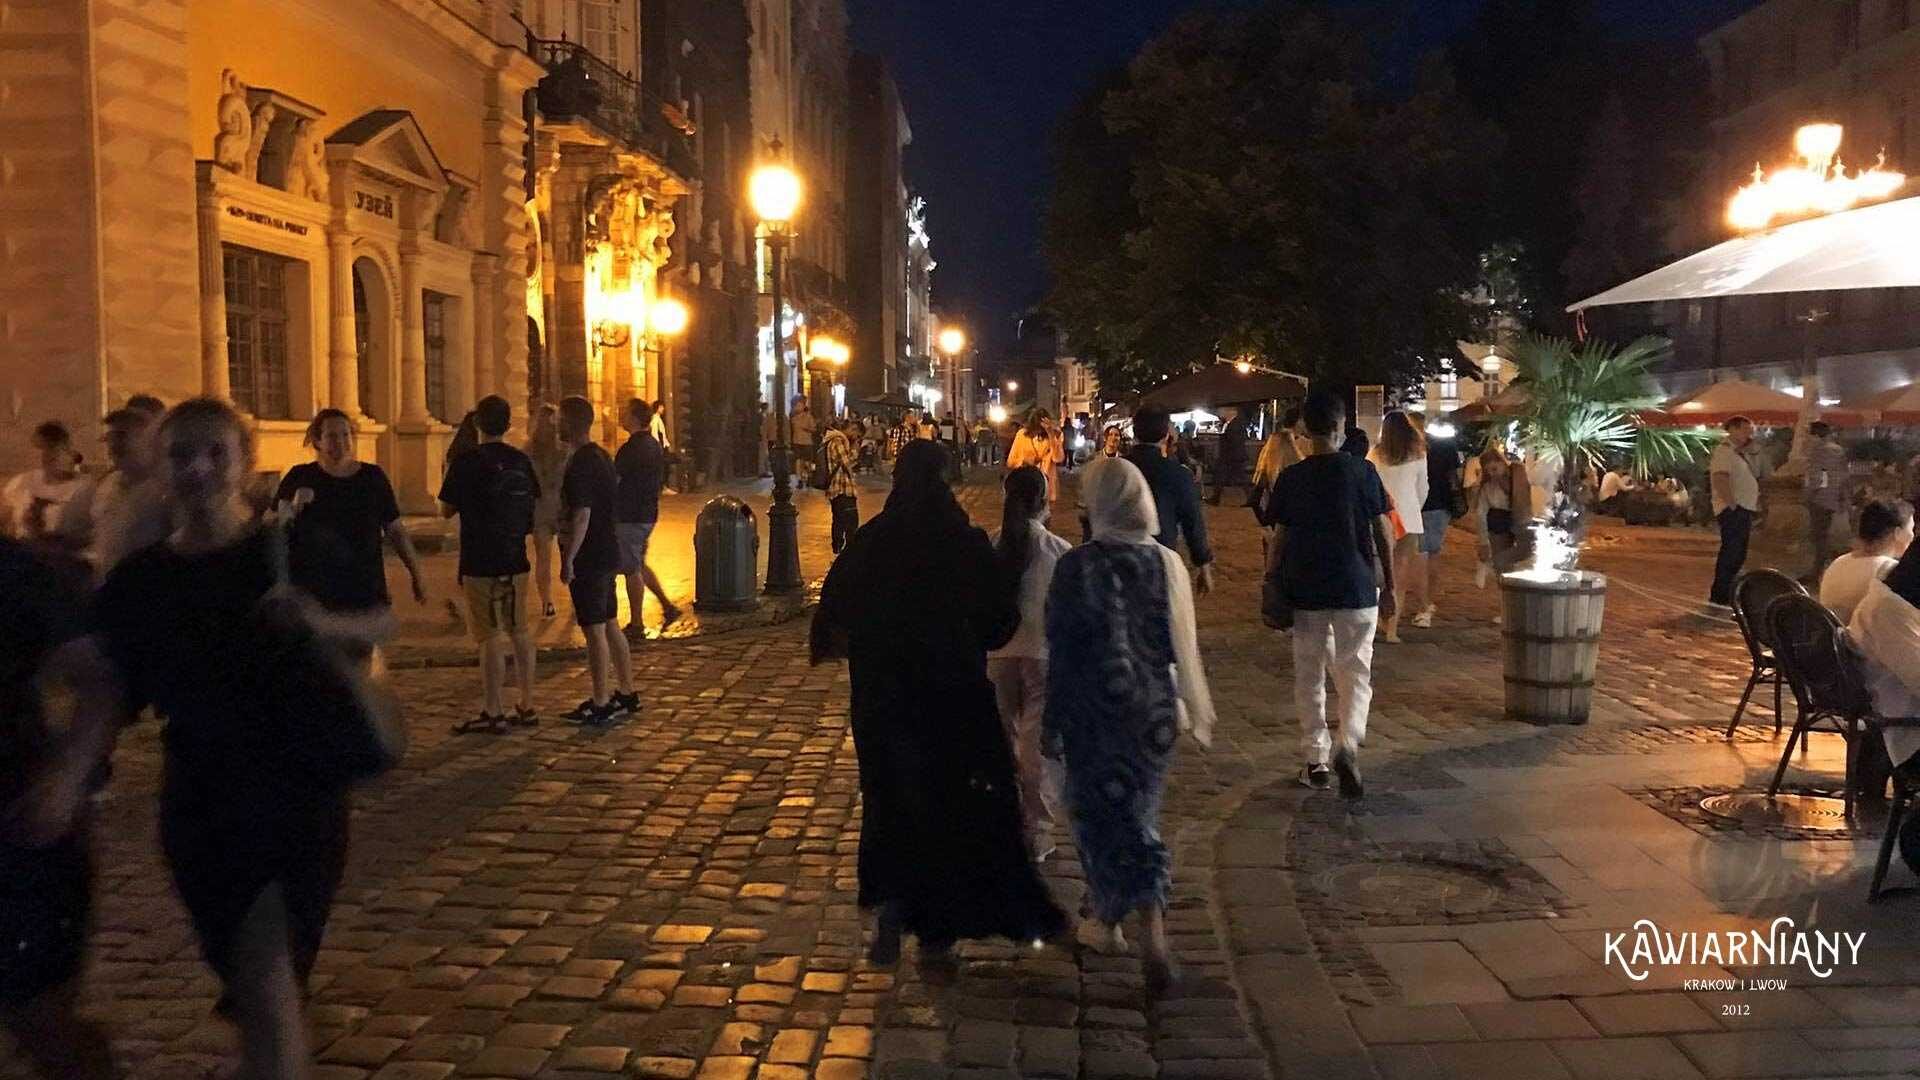 Lwów czy Lwowskie Emiraty Arabskie? Skąd tylu arabskich turystów we Lwowie?